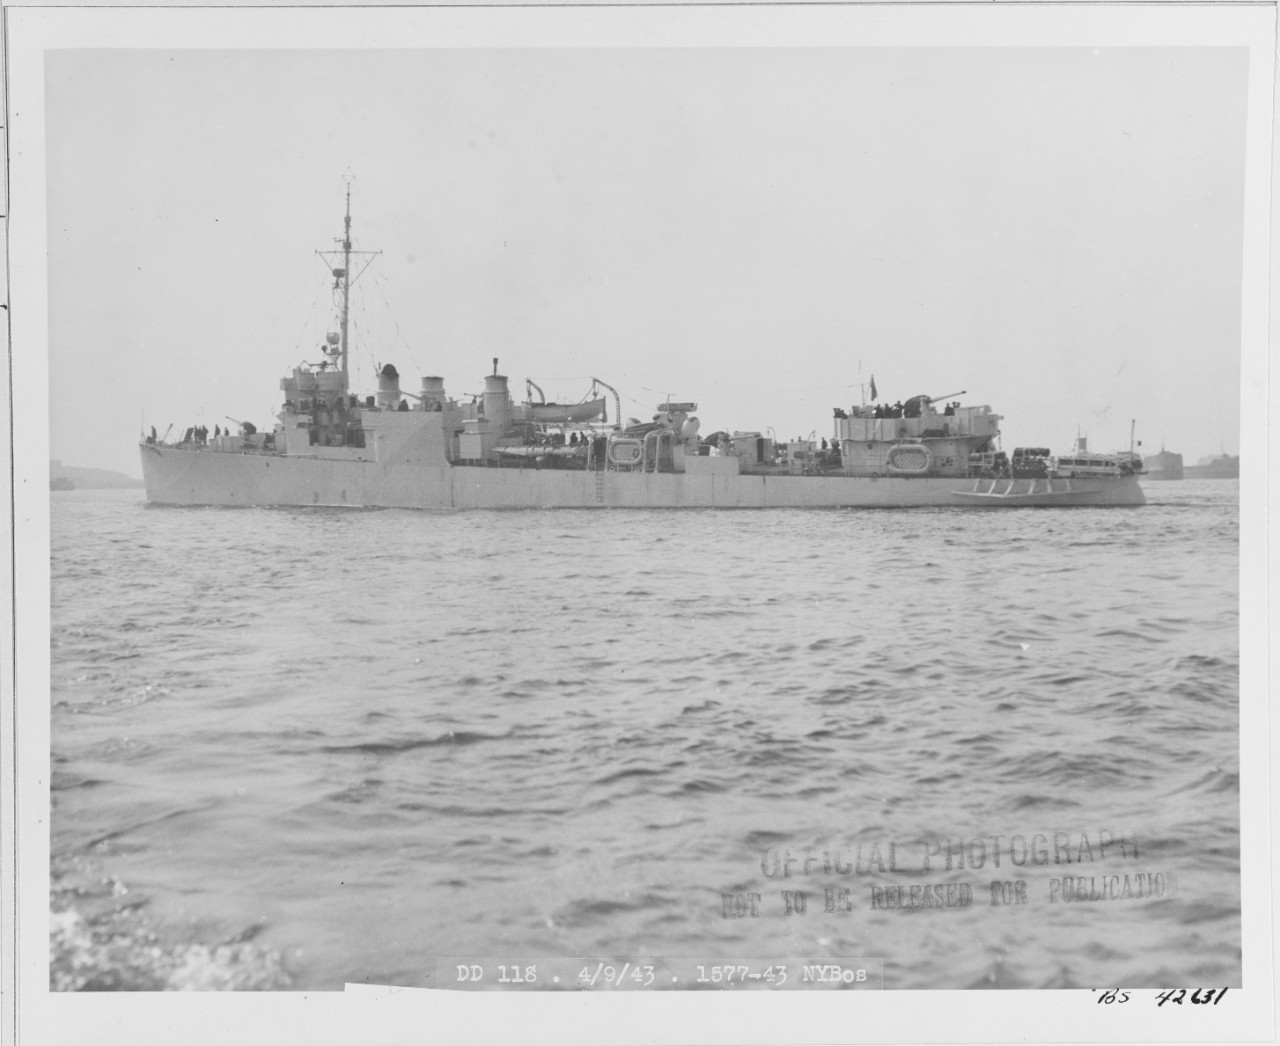 USS LEA (DD-118)